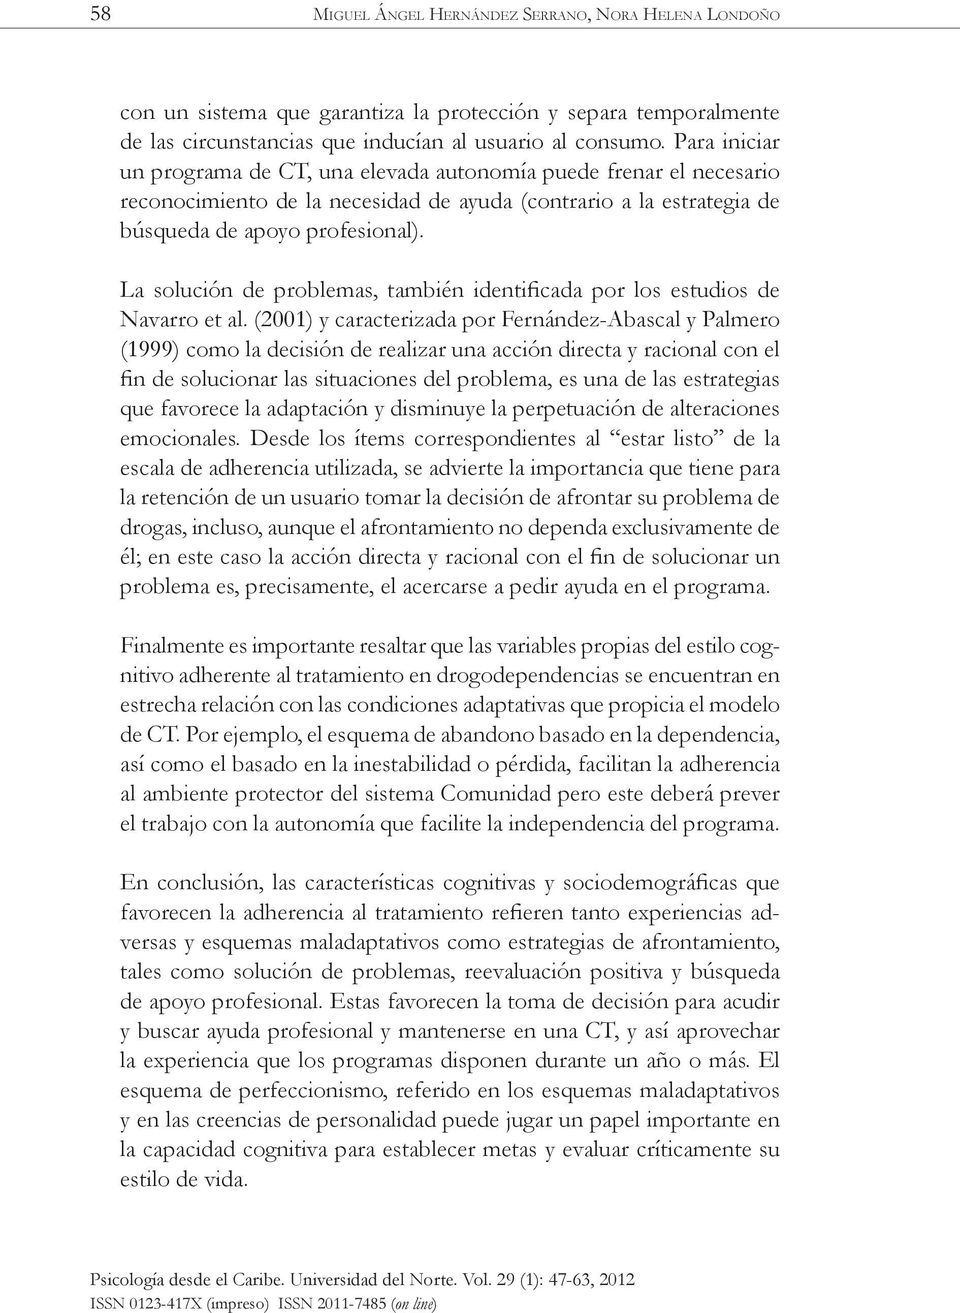 La solución de problemas, también identificada por los estudios de Navarro et al.